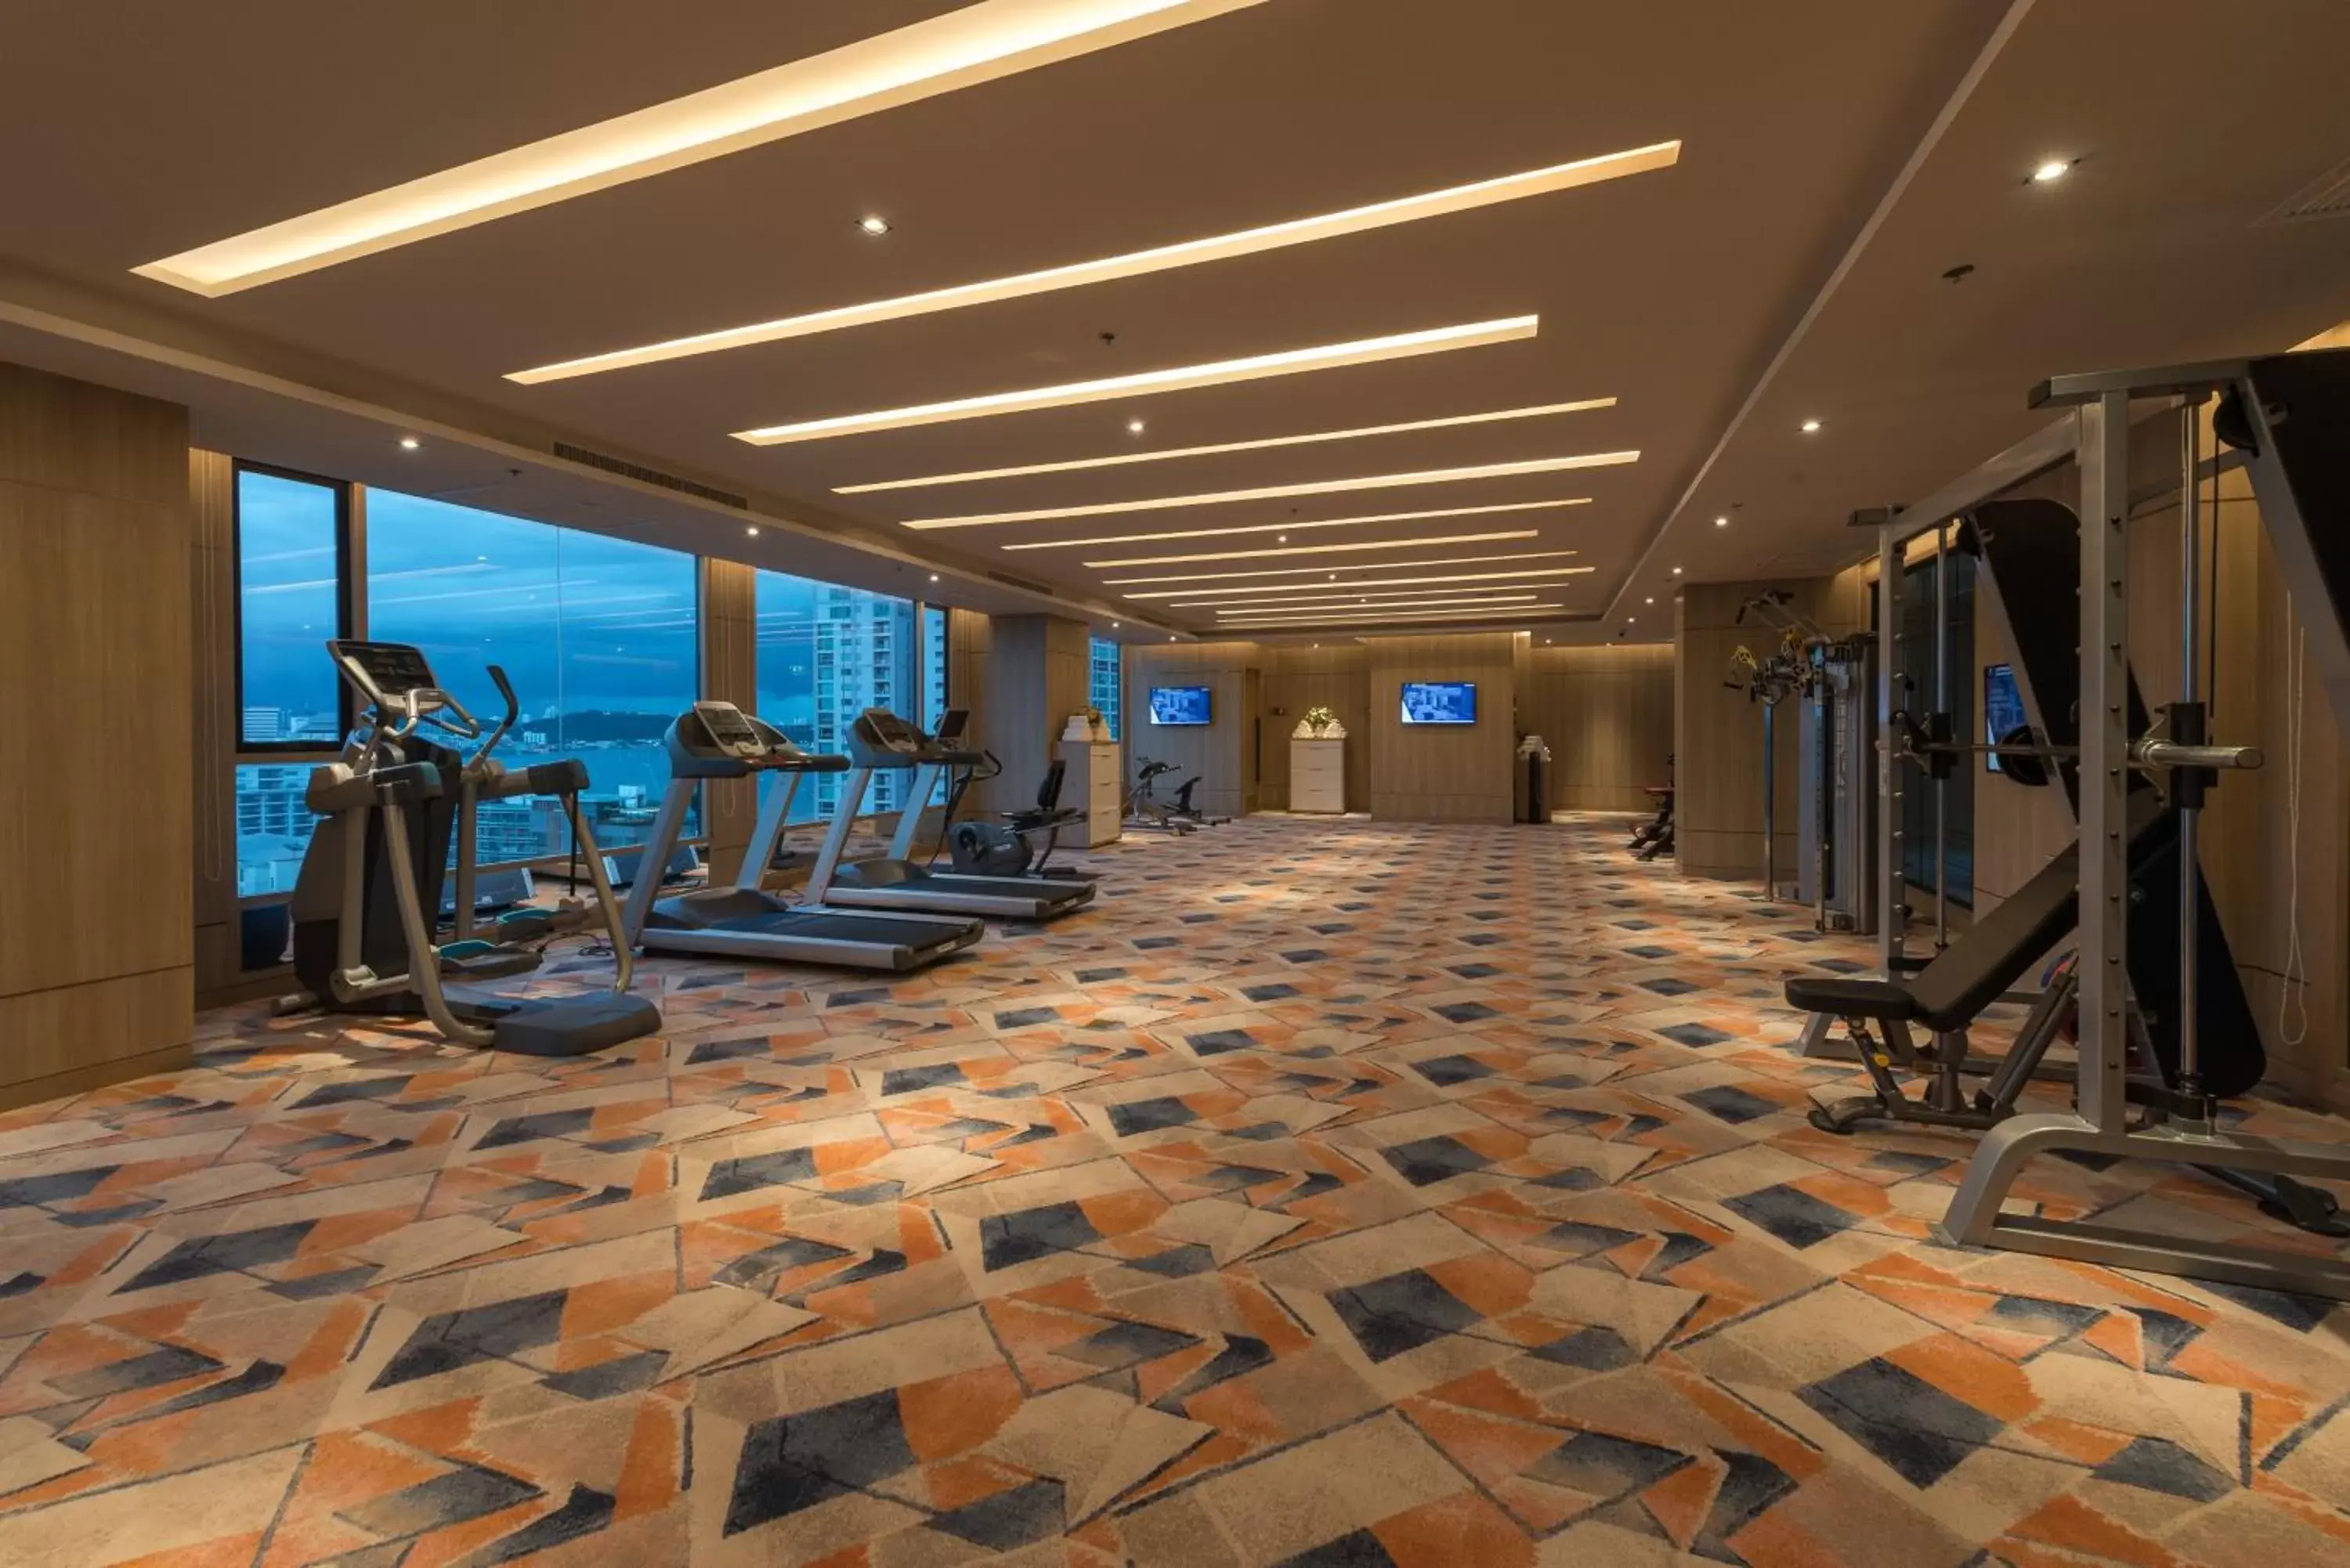 Fitness centre/facilities, Fitness Center/Facilities in Mytt Hotel Pattaya - SHA Extra Plus